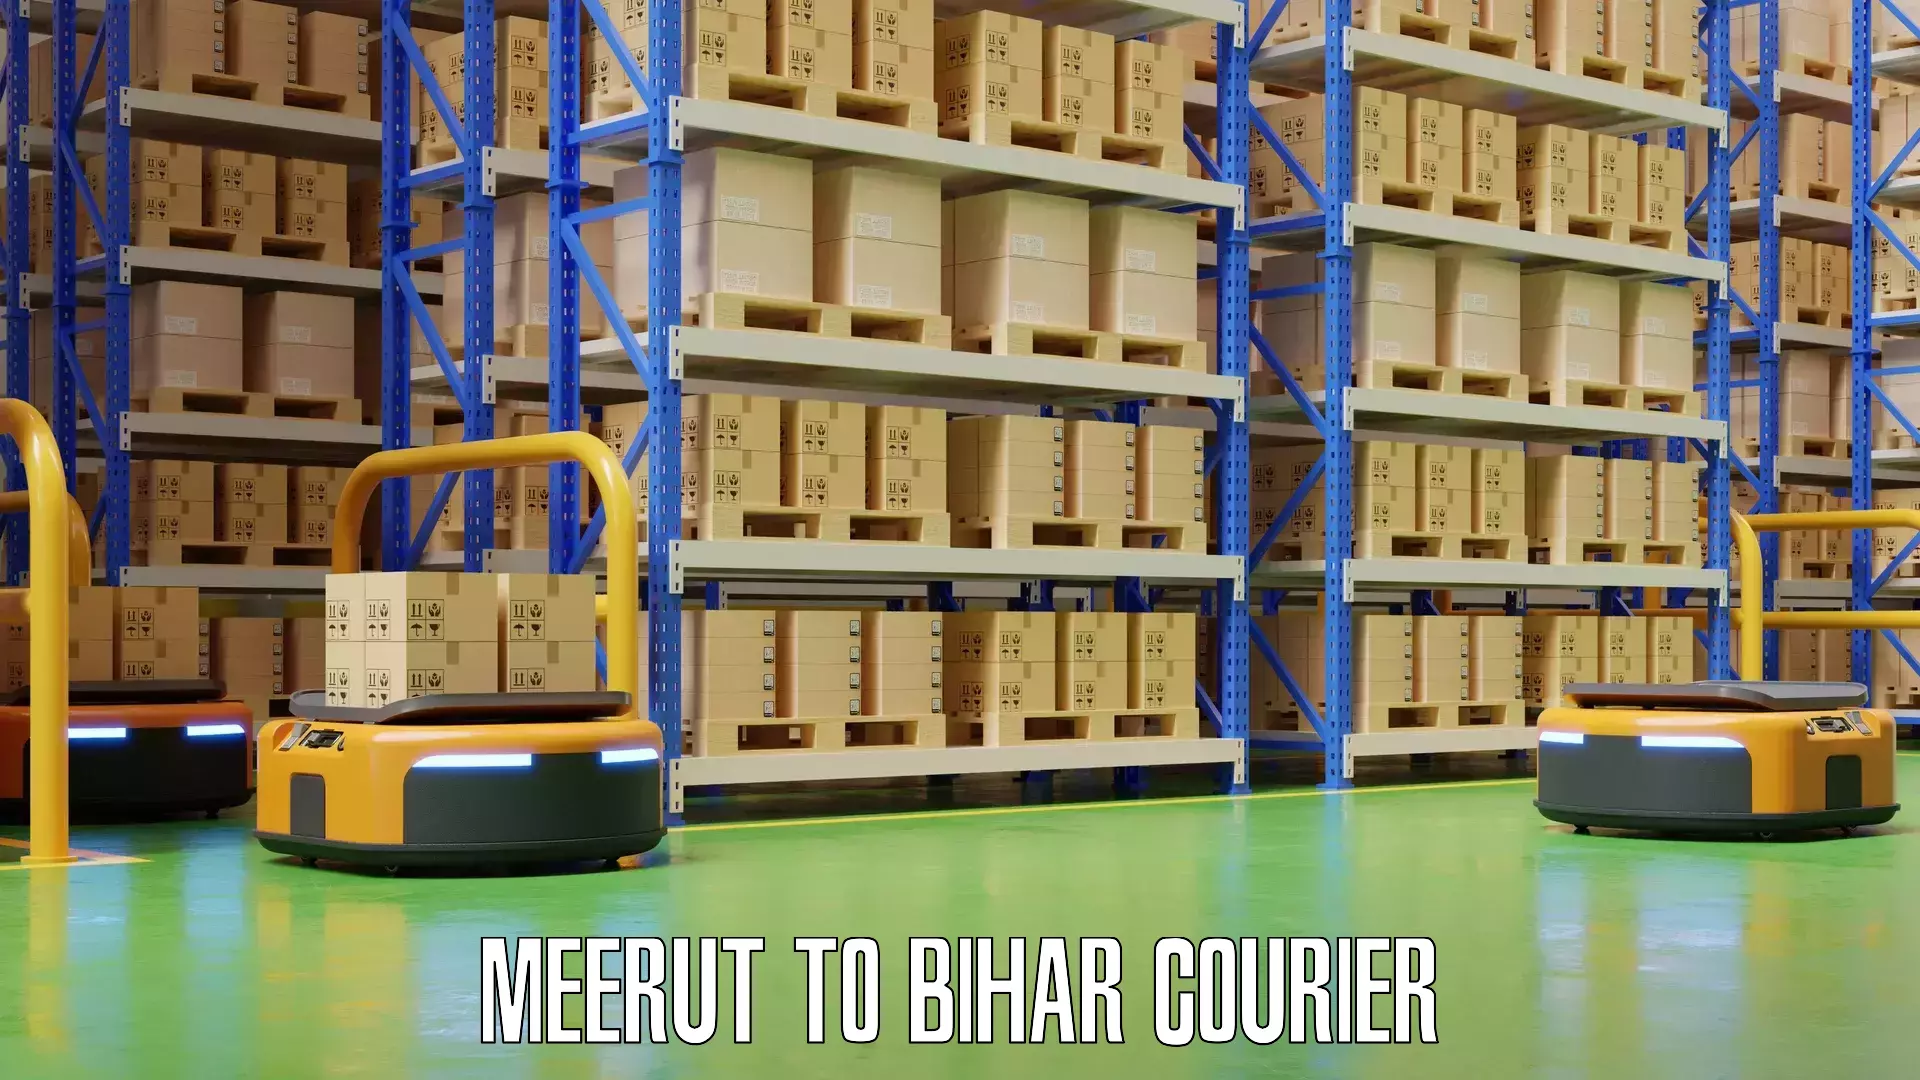 Baggage transport network Meerut to Bihar